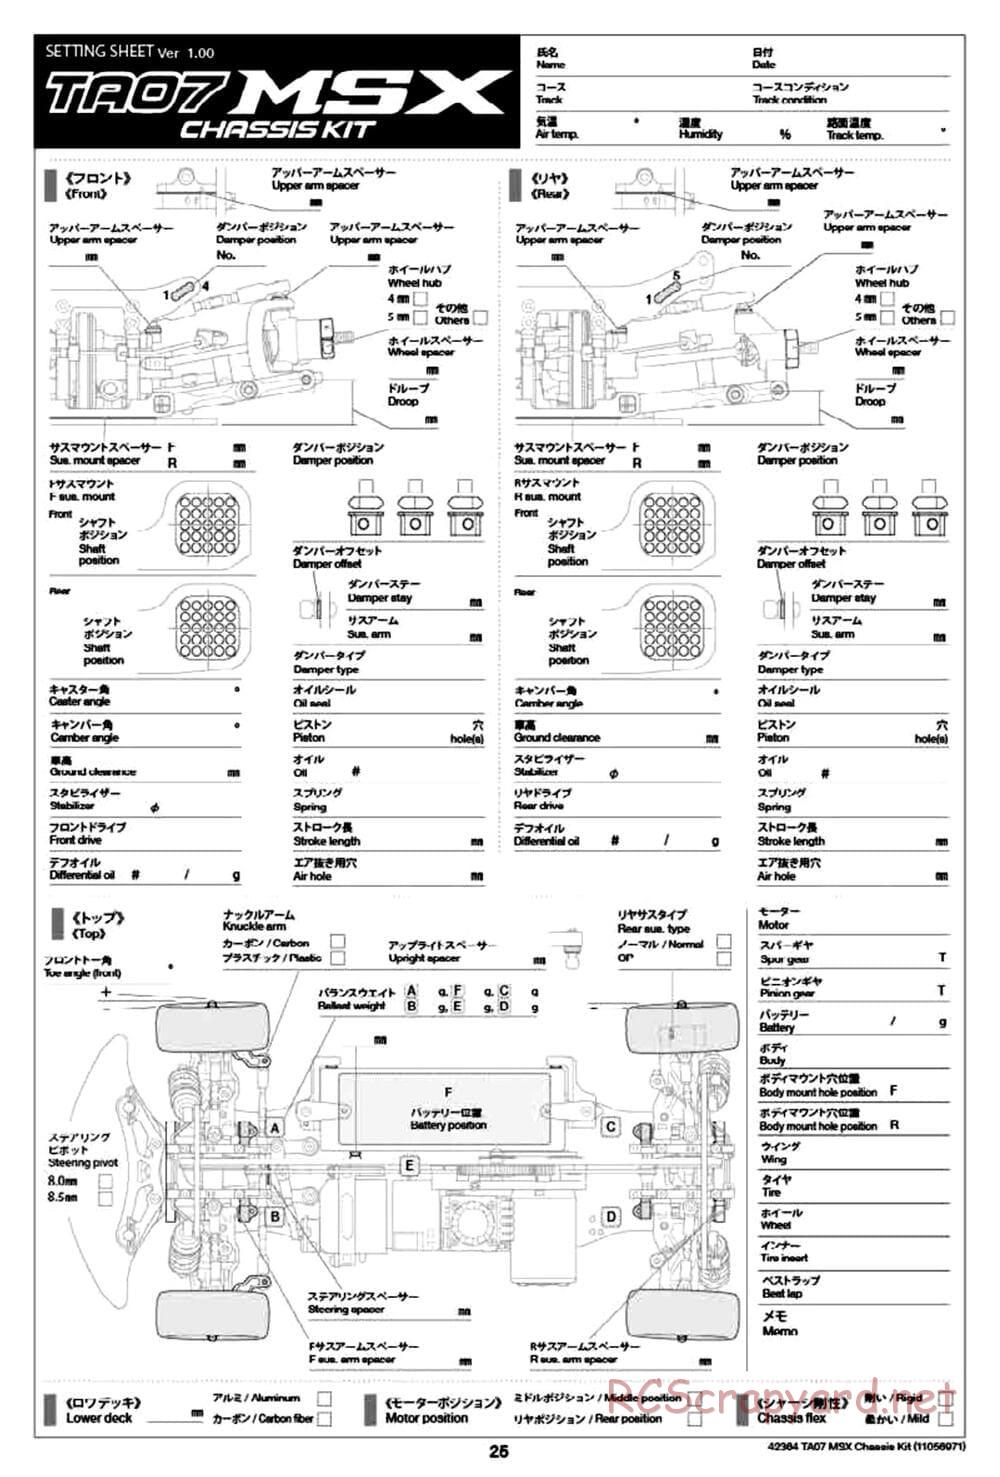 Tamiya - TA07 MSX Chassis - Manual - Page 25